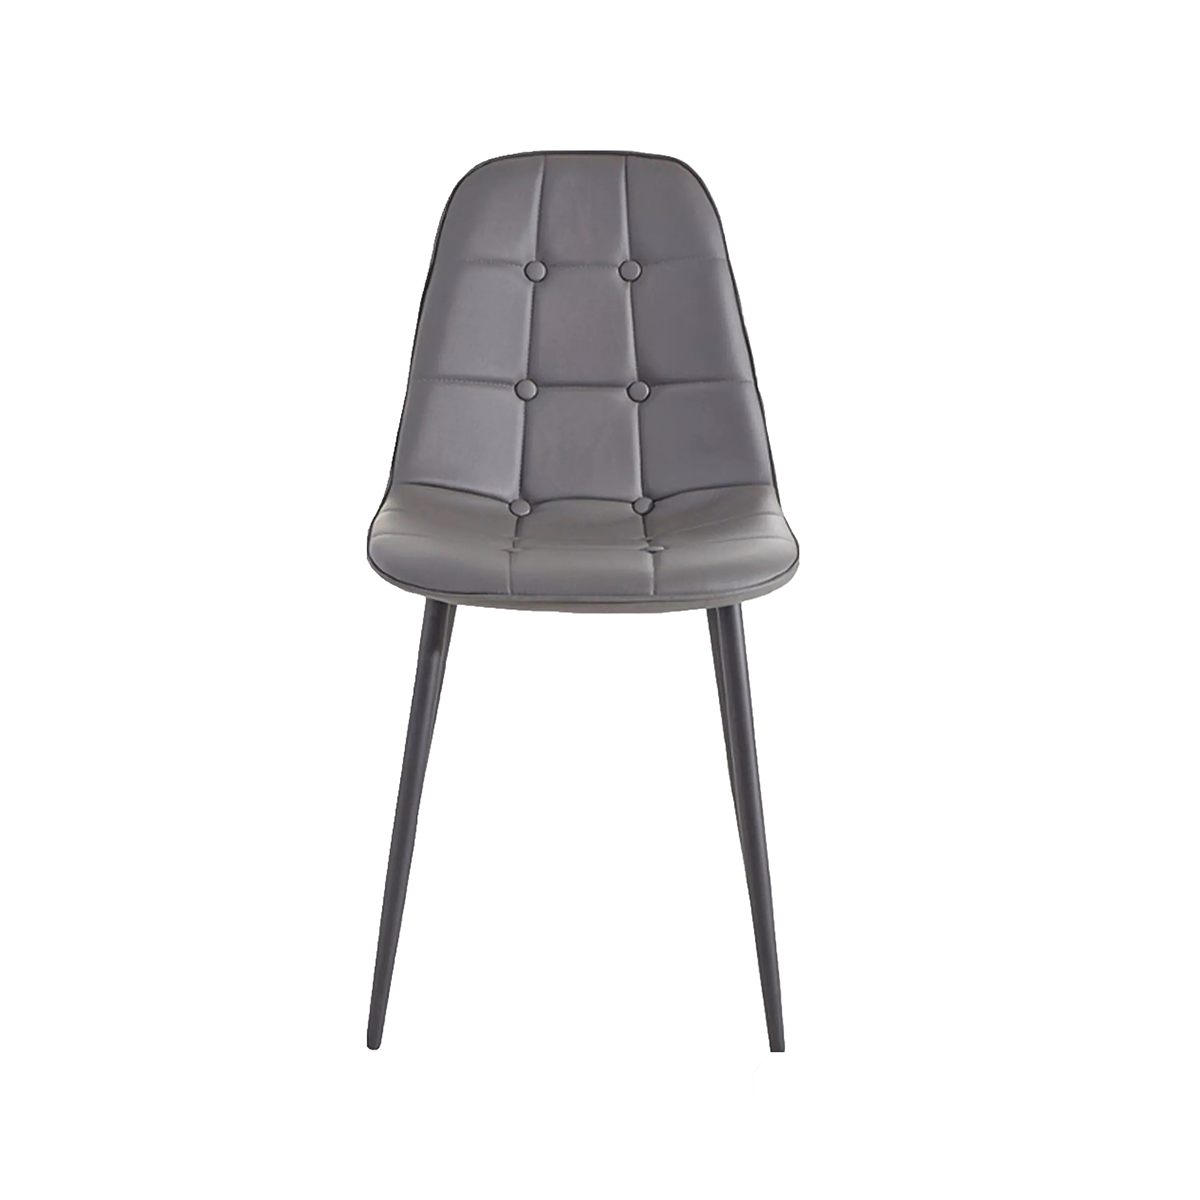 FondHouse Fawin Velvet Dining Chair - Black Legs